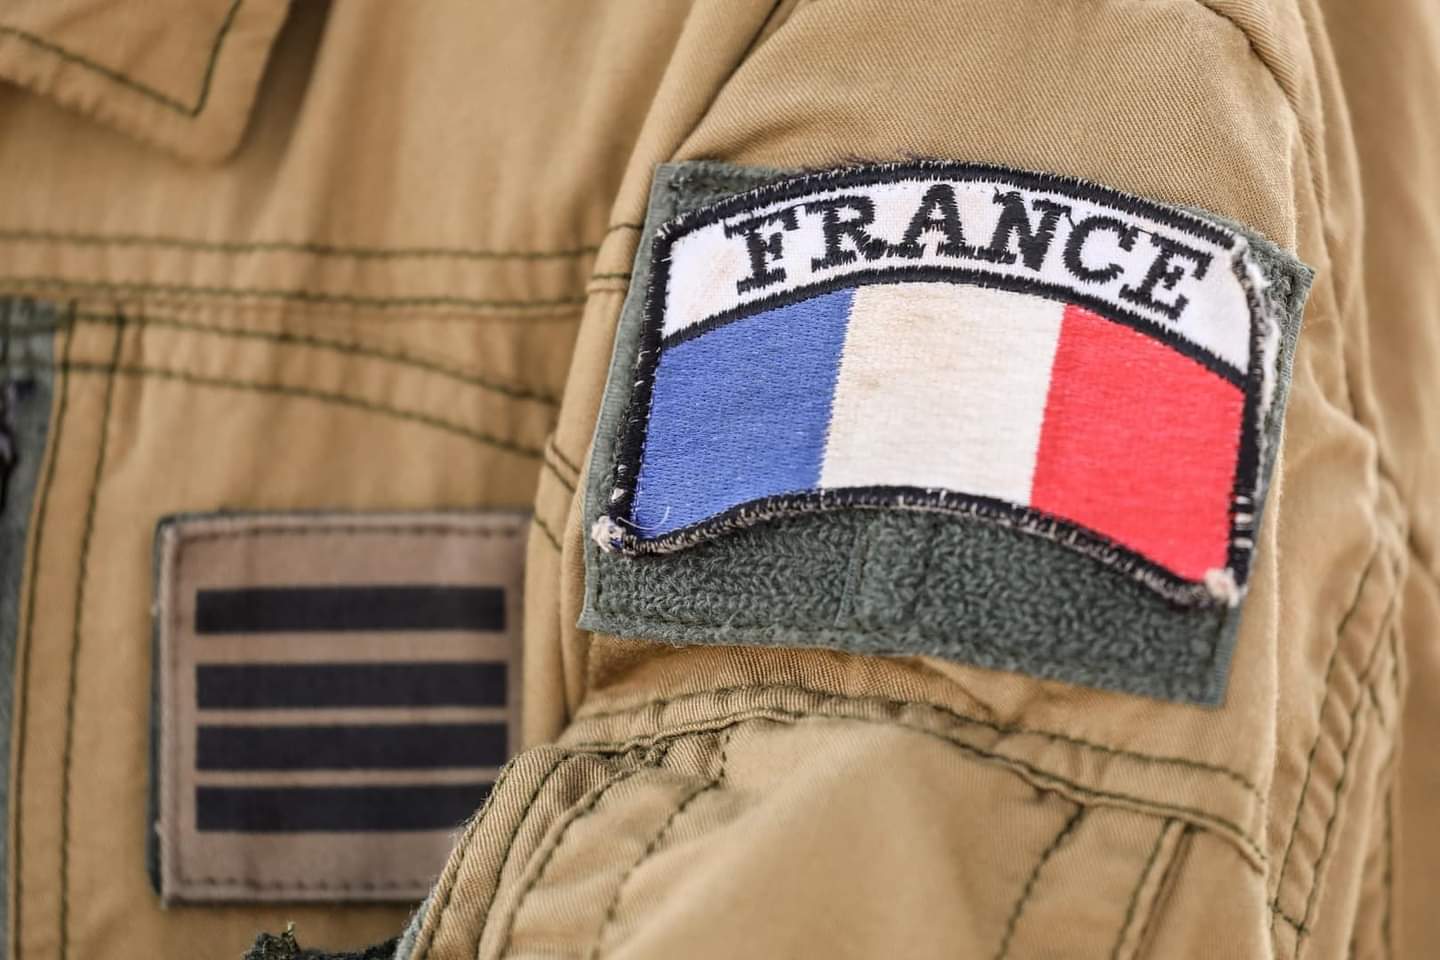 Fin de Barkhane: Paris « veut changer de stratégie pour continuer à nous occuper illégalement »